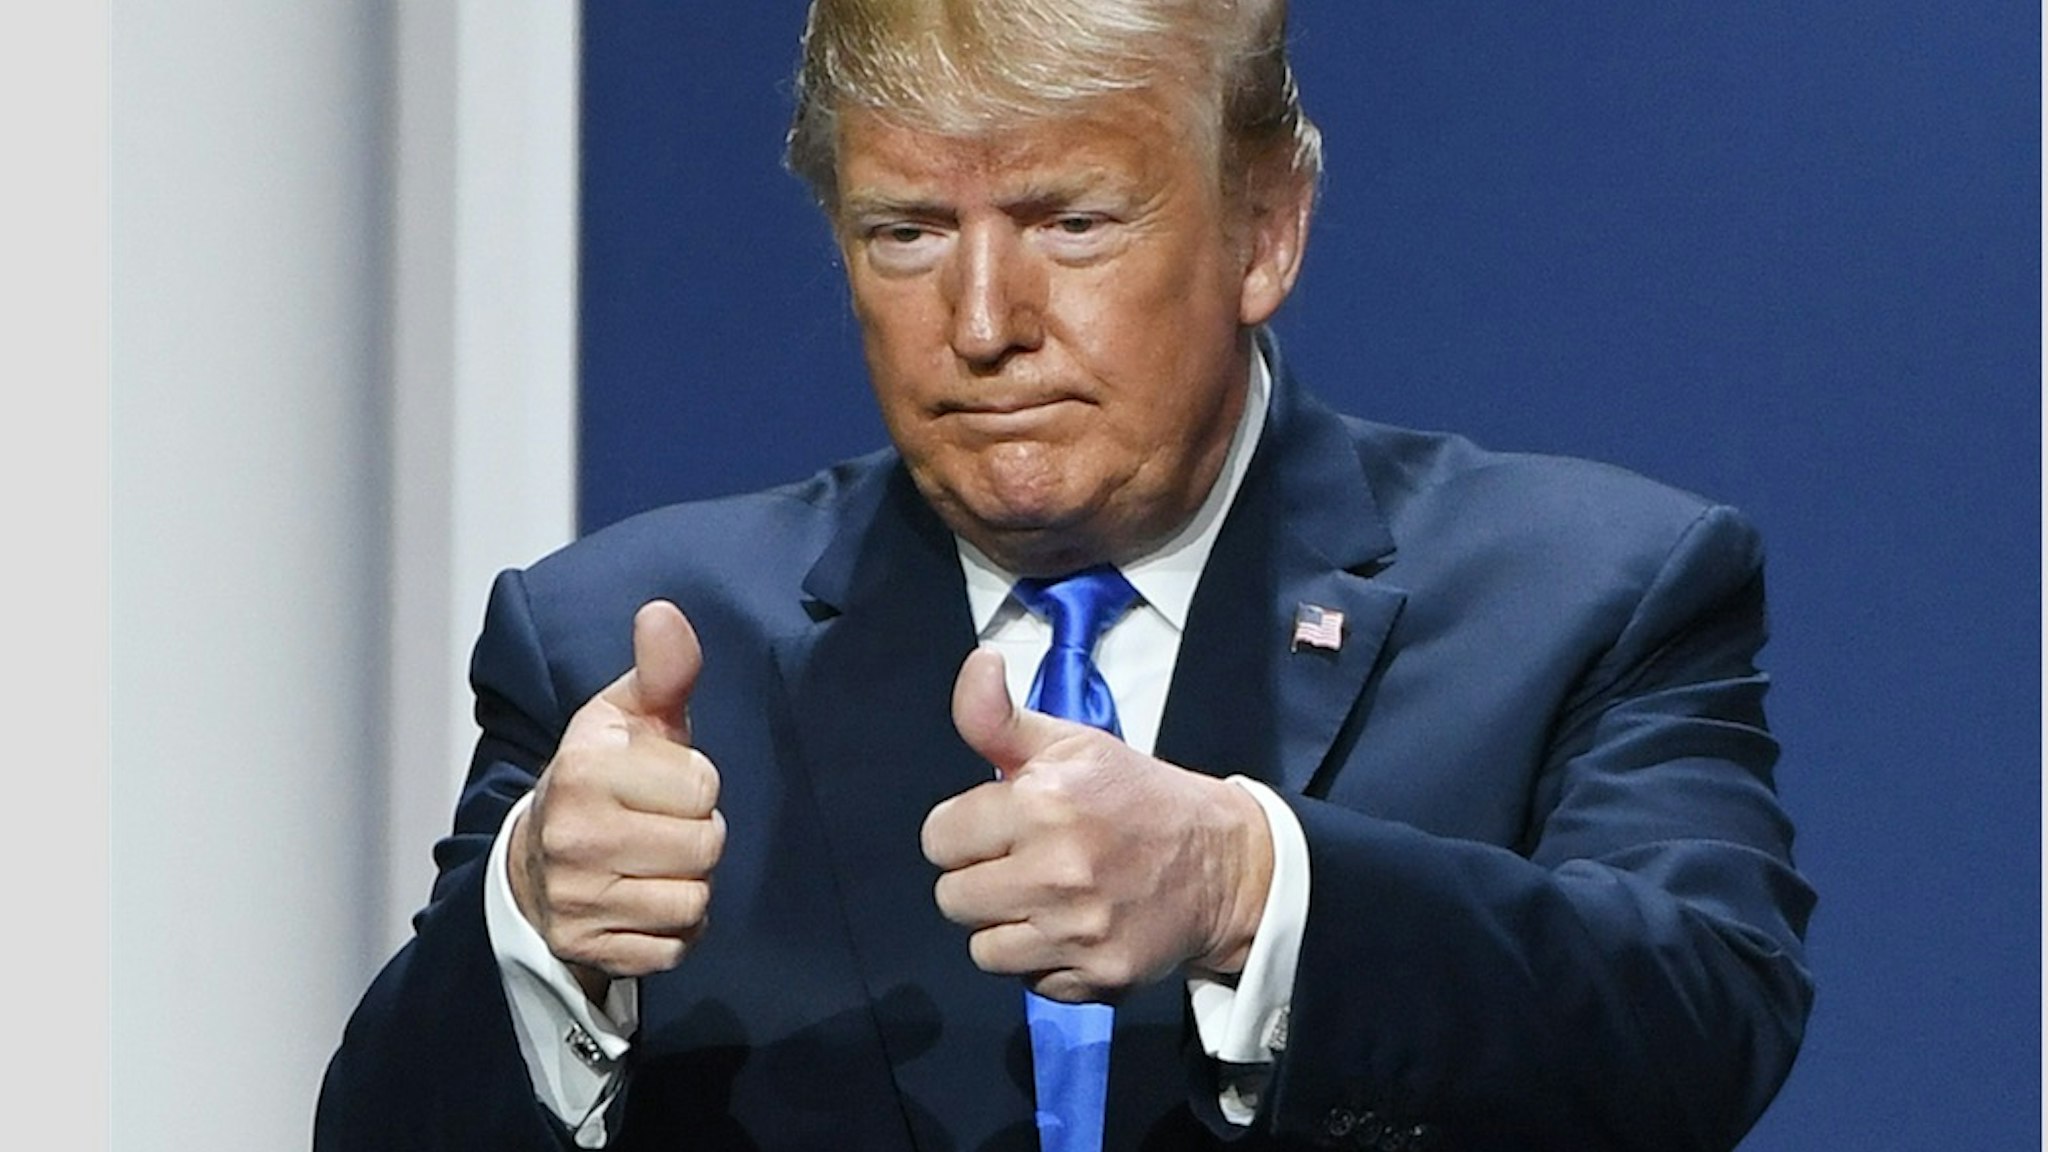 Trump gives thumbs up.